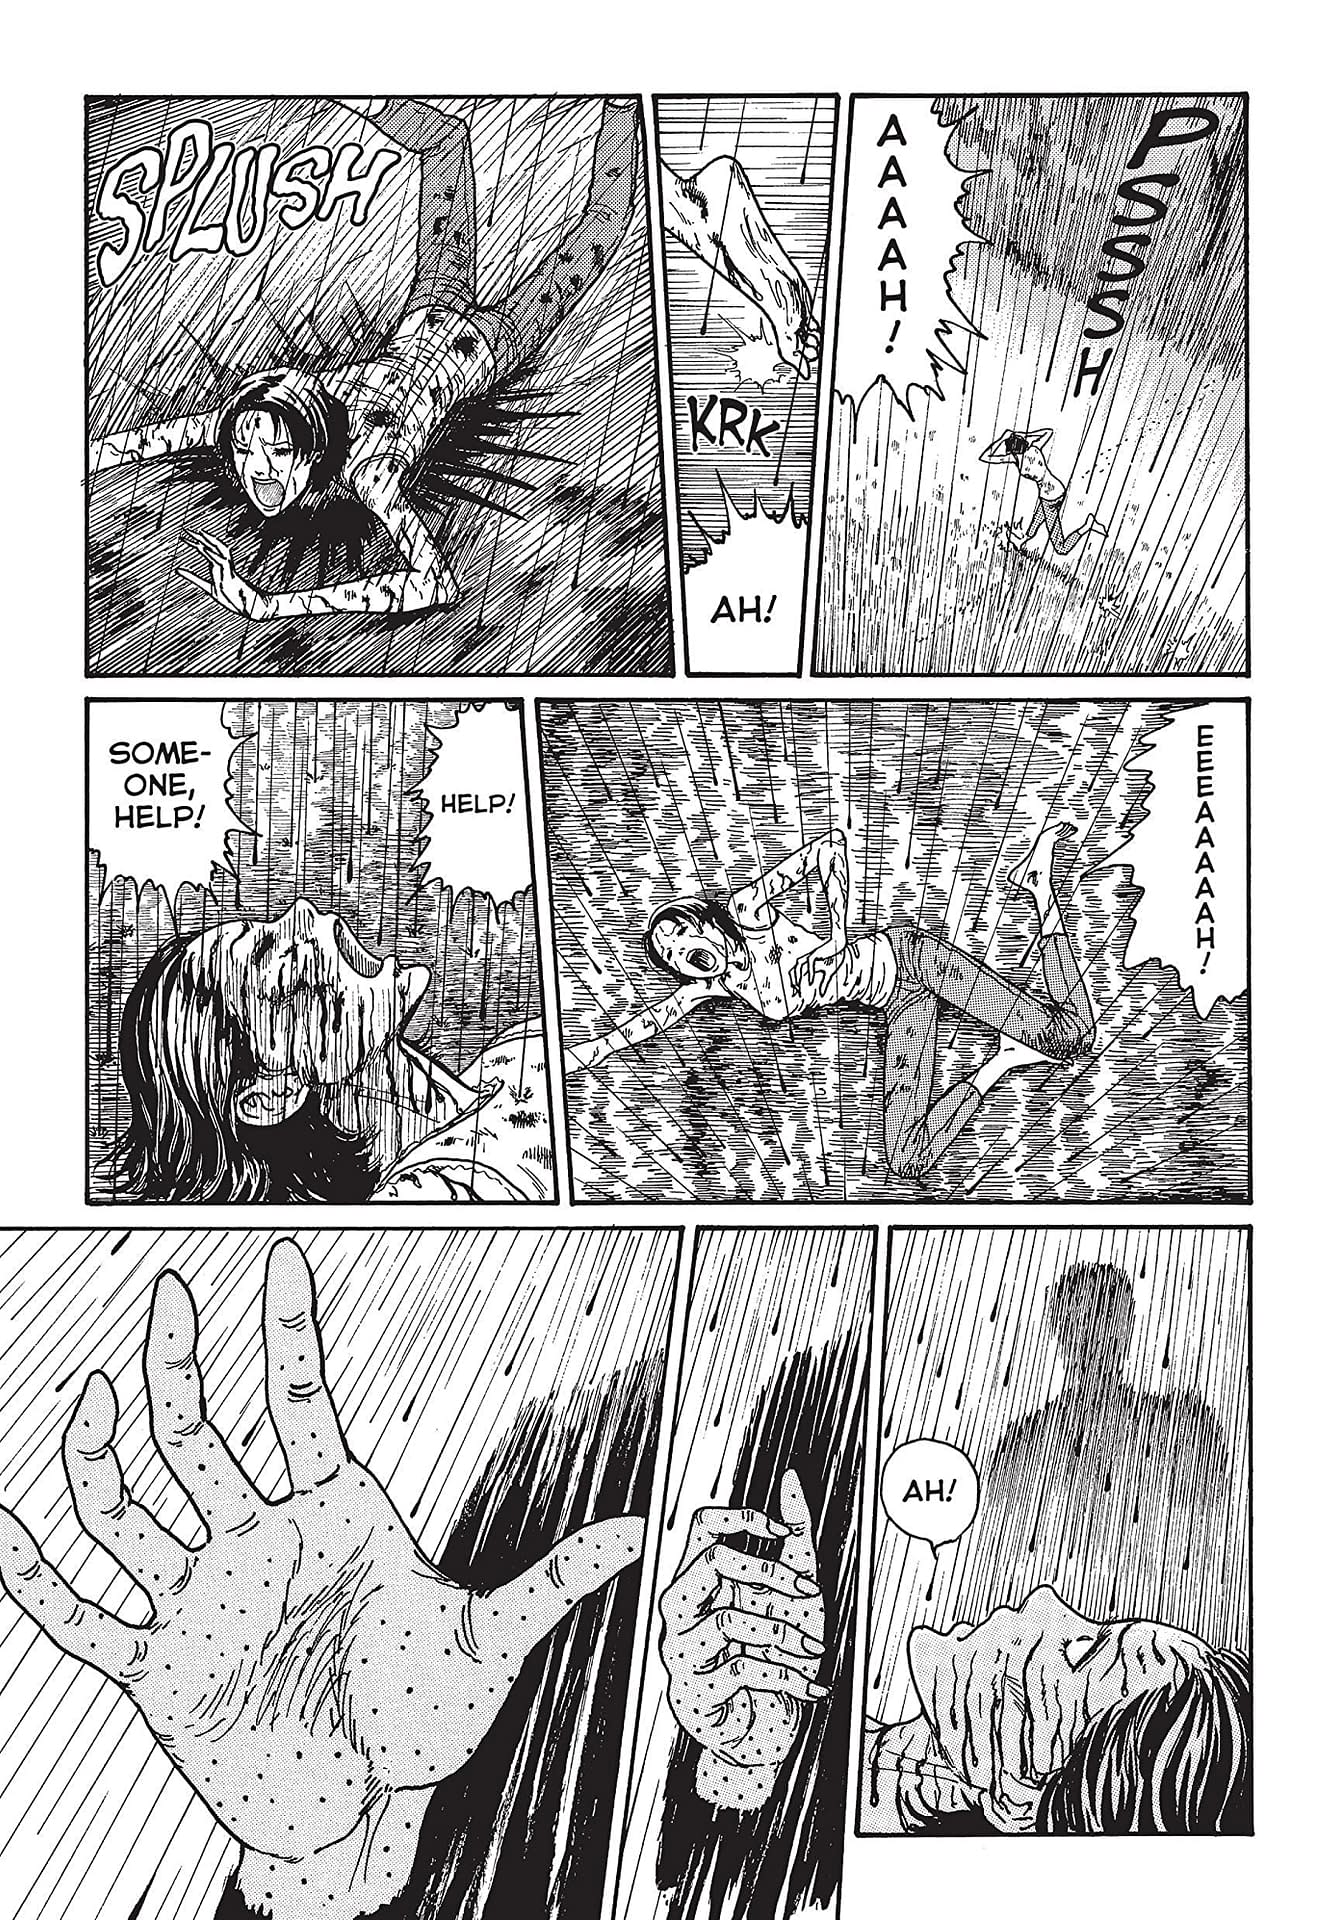 junji ito smashed manga